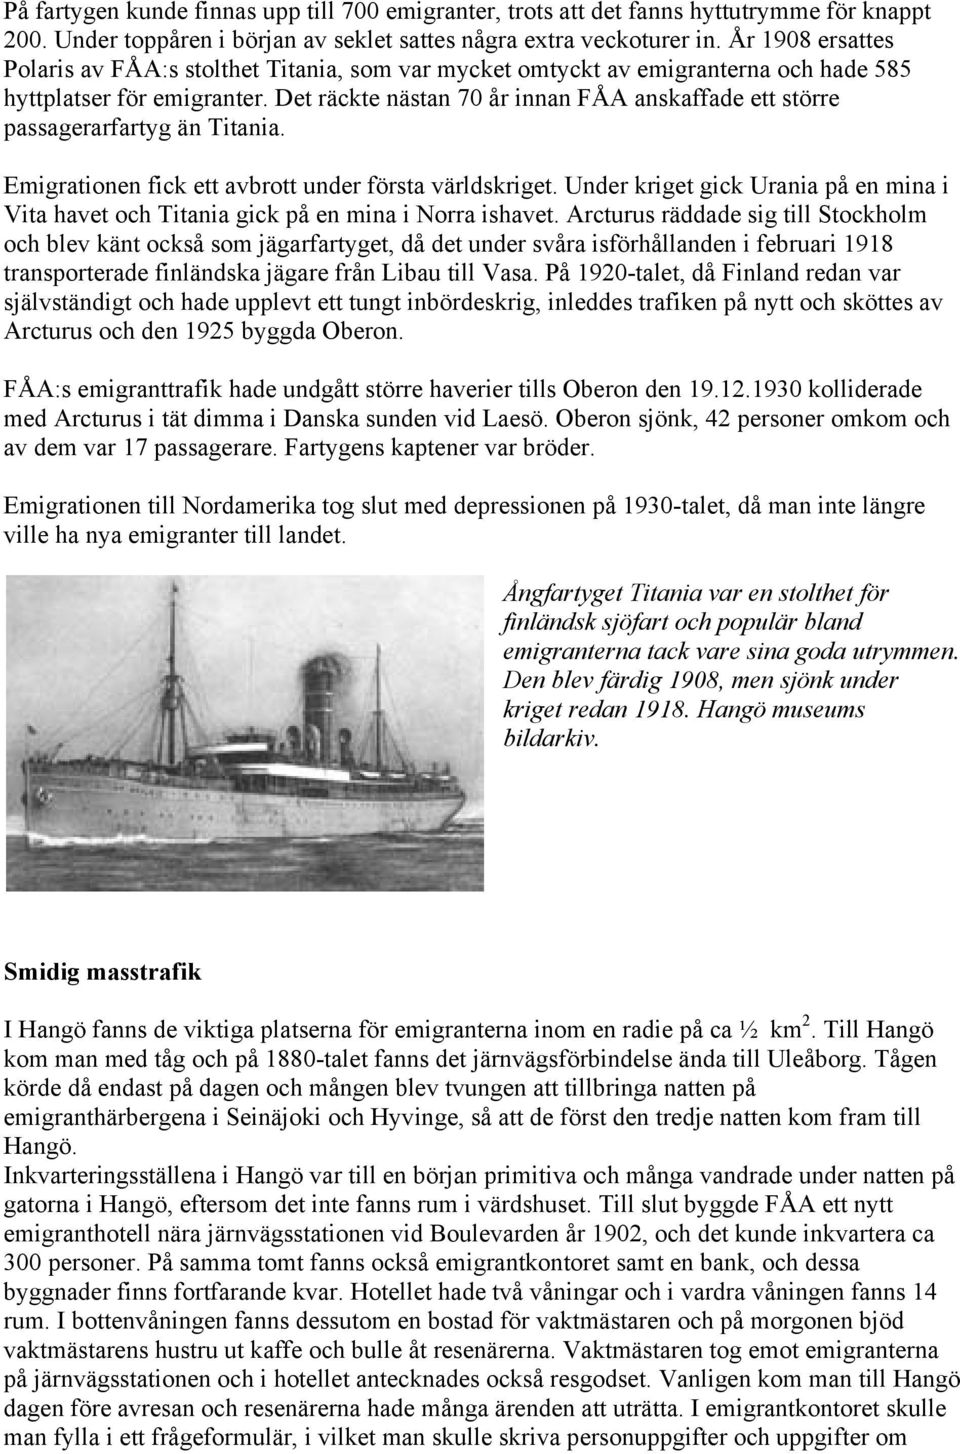 Det räckte nästan 70 år innan FÅA anskaffade ett större passagerarfartyg än Titania. Emigrationen fick ett avbrott under första världskriget.